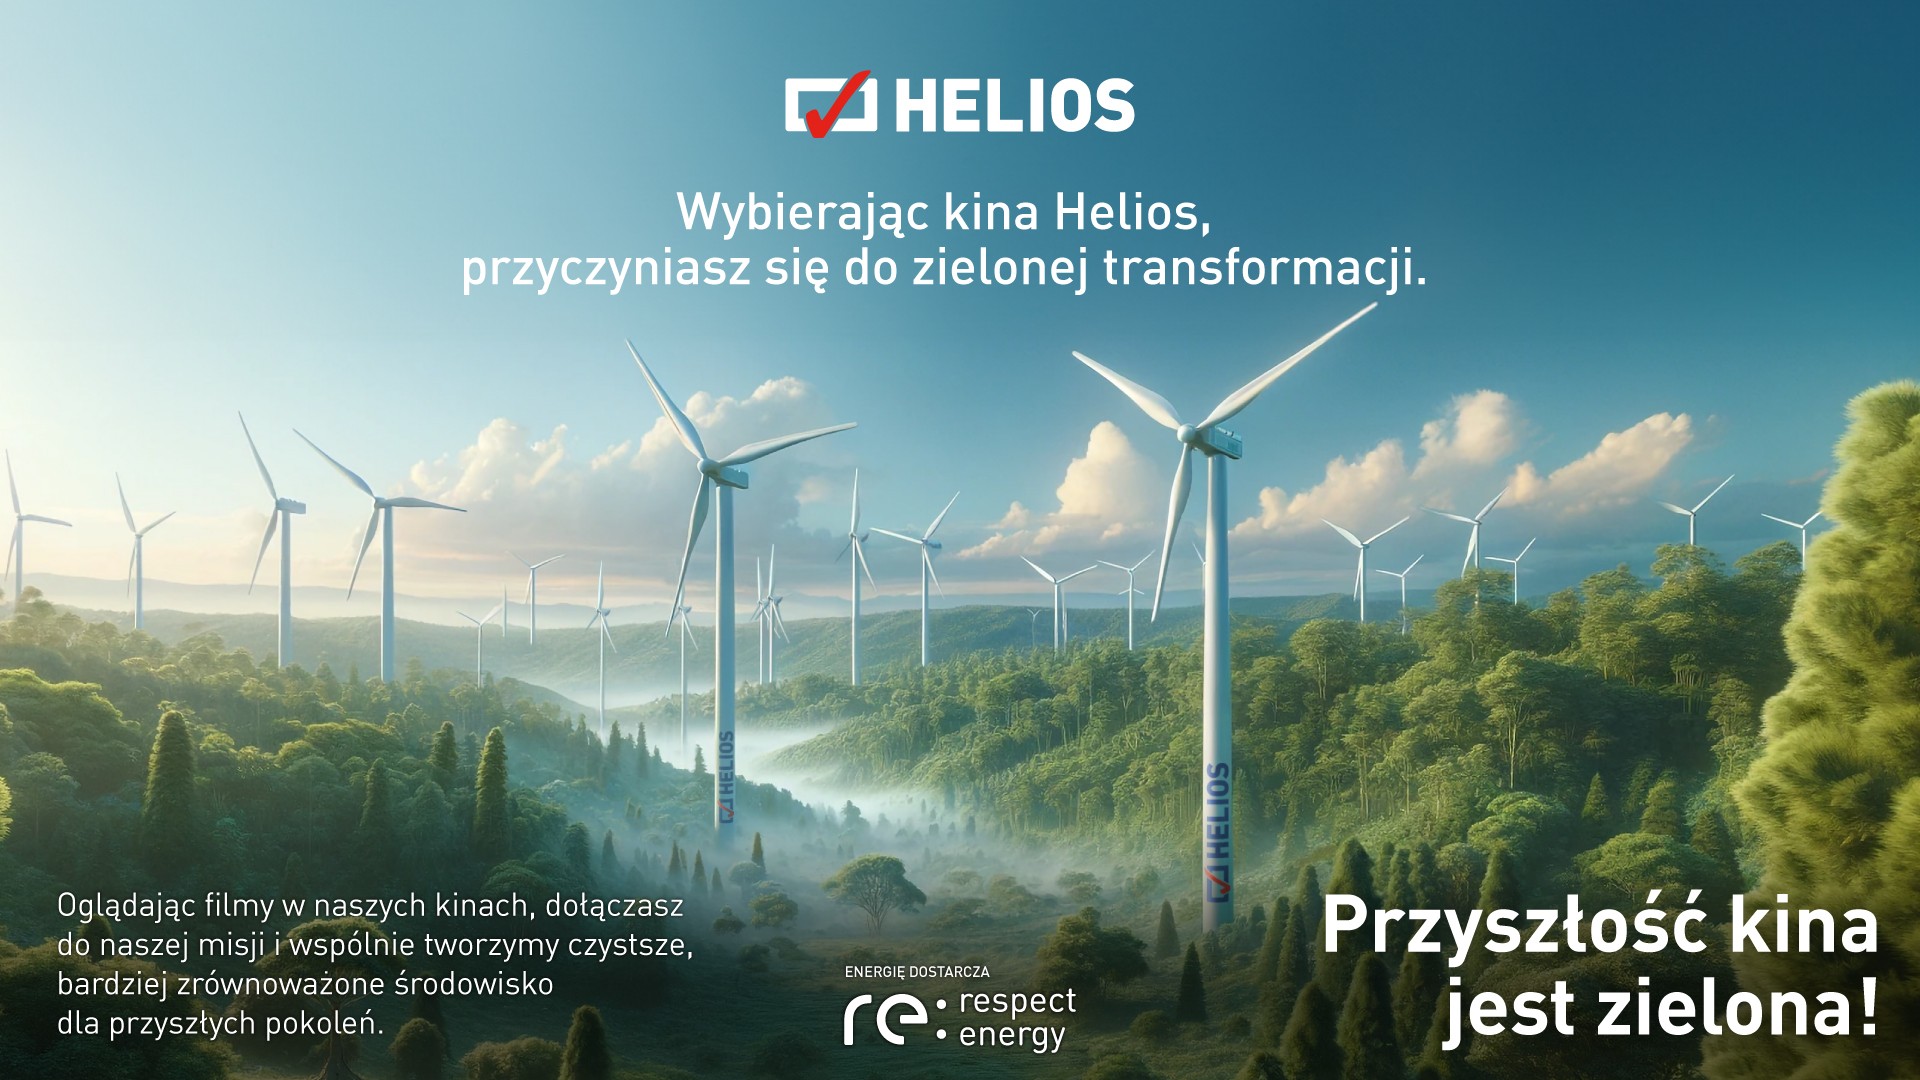 Helios pierwszą siecią kinową w Polsce z energią z odnawialnych źródeł